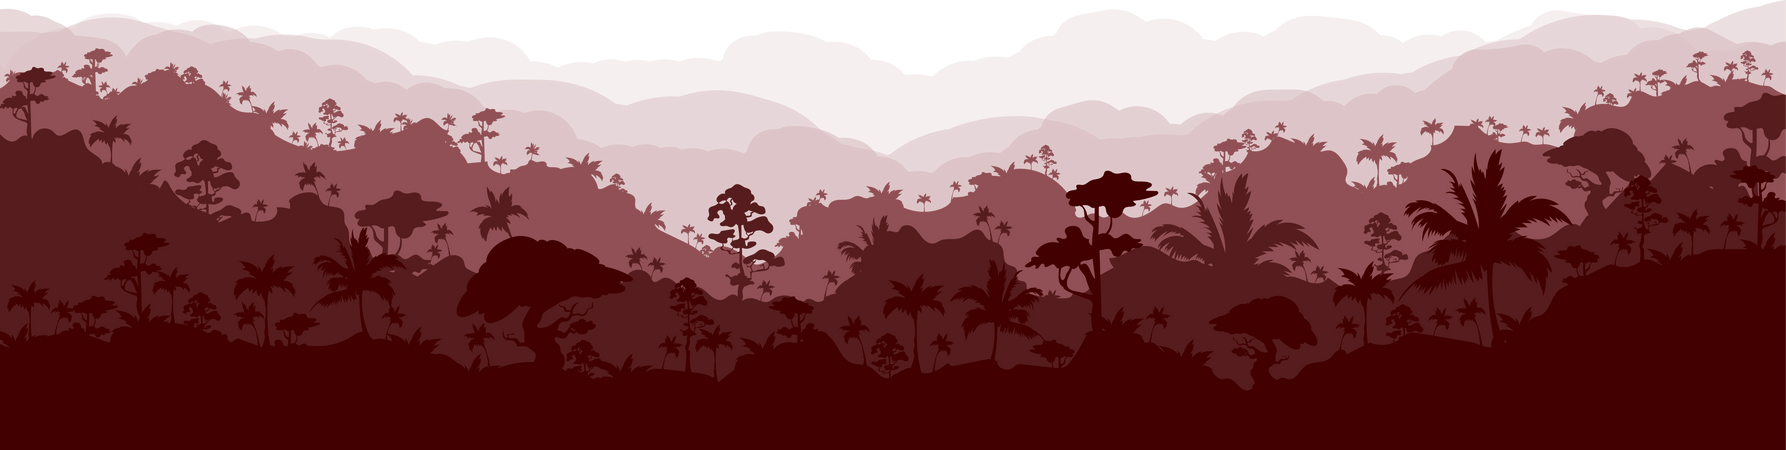 Paisaje de bosque marrón  Ilustración